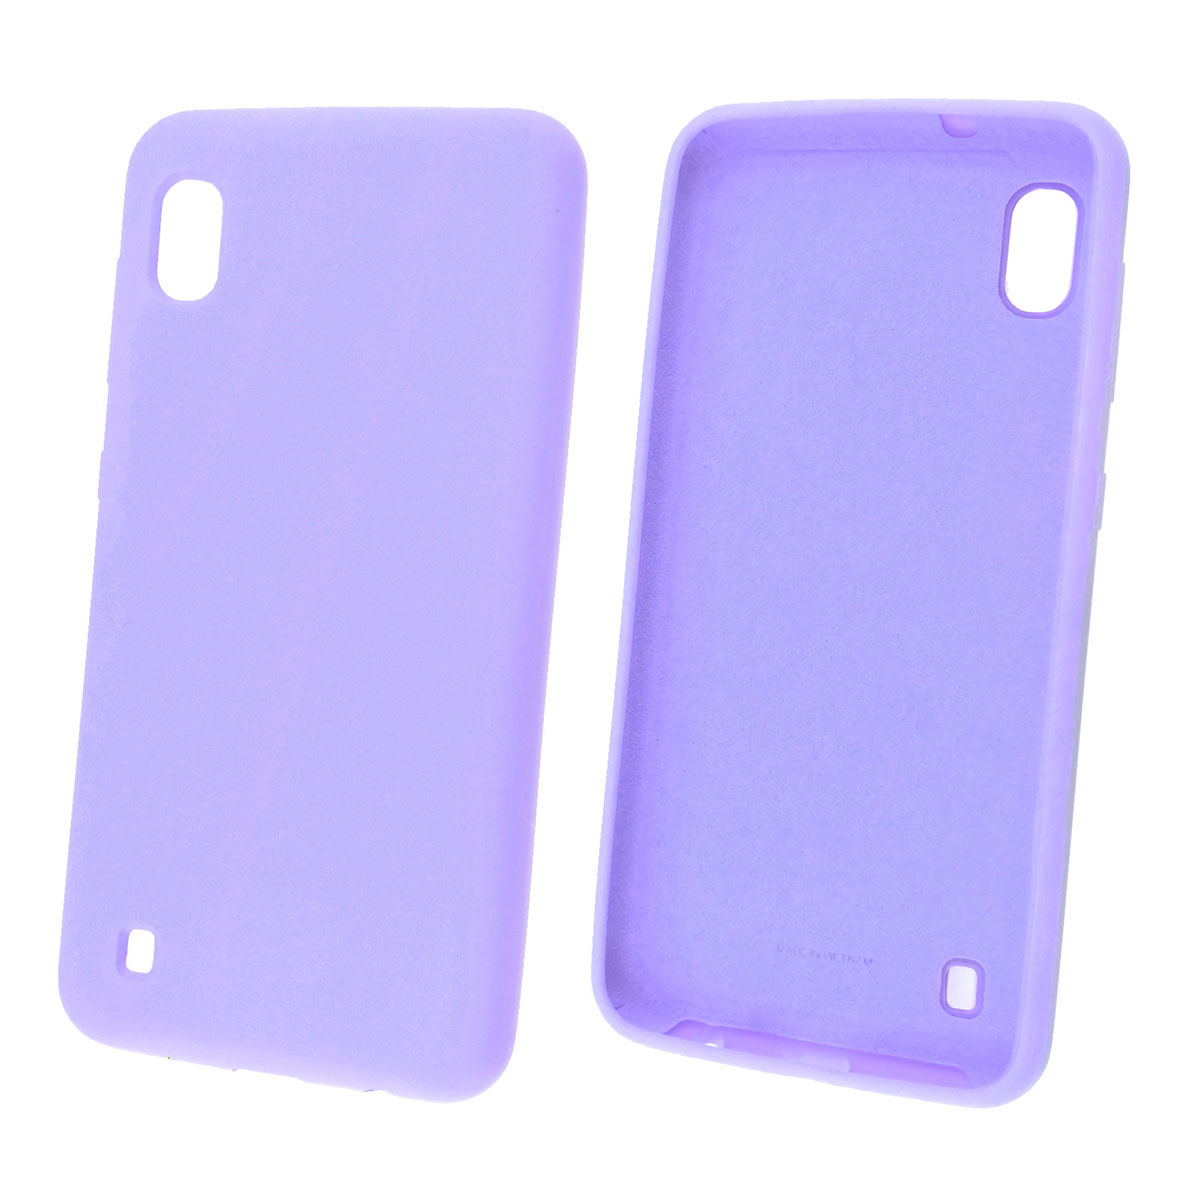 Чехол накладка Silicon Cover для Samsung A10 2019 (SM-A105), силикон, бархат, цвет светло фиолетовый.